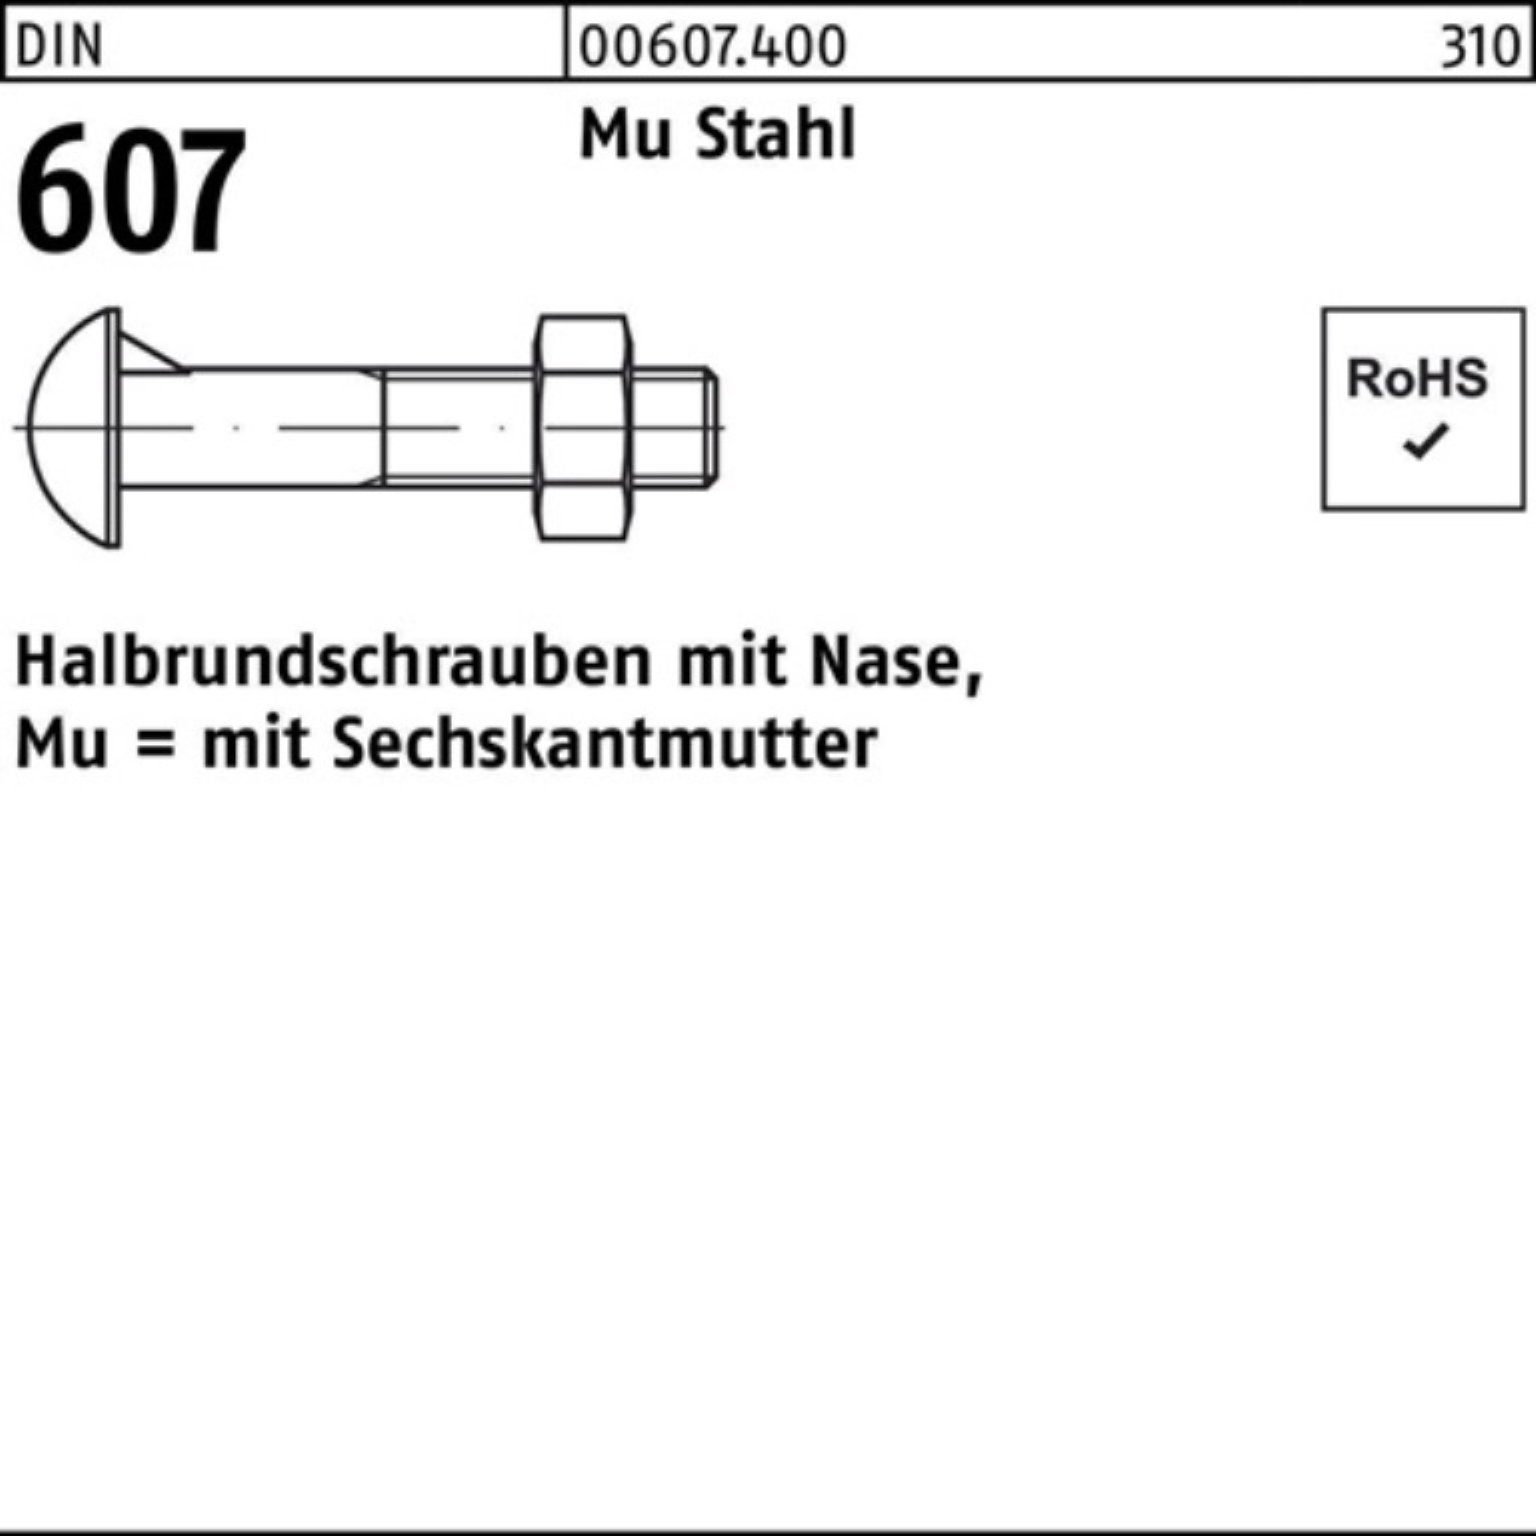 Reyher Schraube 100er Pack Halbrundschraube DIN 607 Nase/6-ktmutter M16x 50 Mu Stahl 4